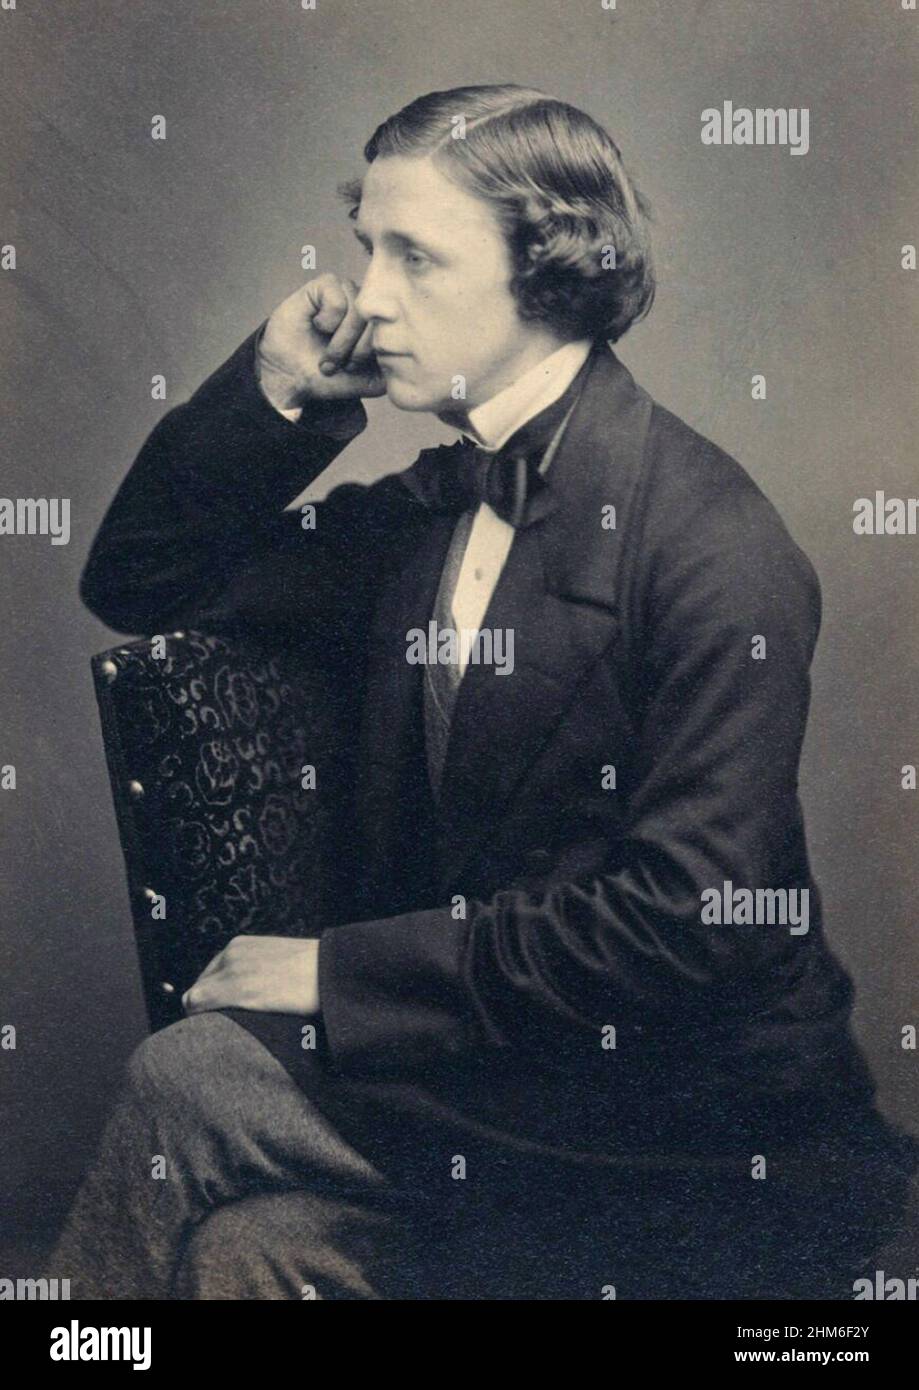 Ein Porträt des Autors Lewis Carroll (richtiger Name Charles Lutwidge Dodgson), Autor von Alice im Wunderland, von 1857, als er 25 Jahre alt war Stockfoto